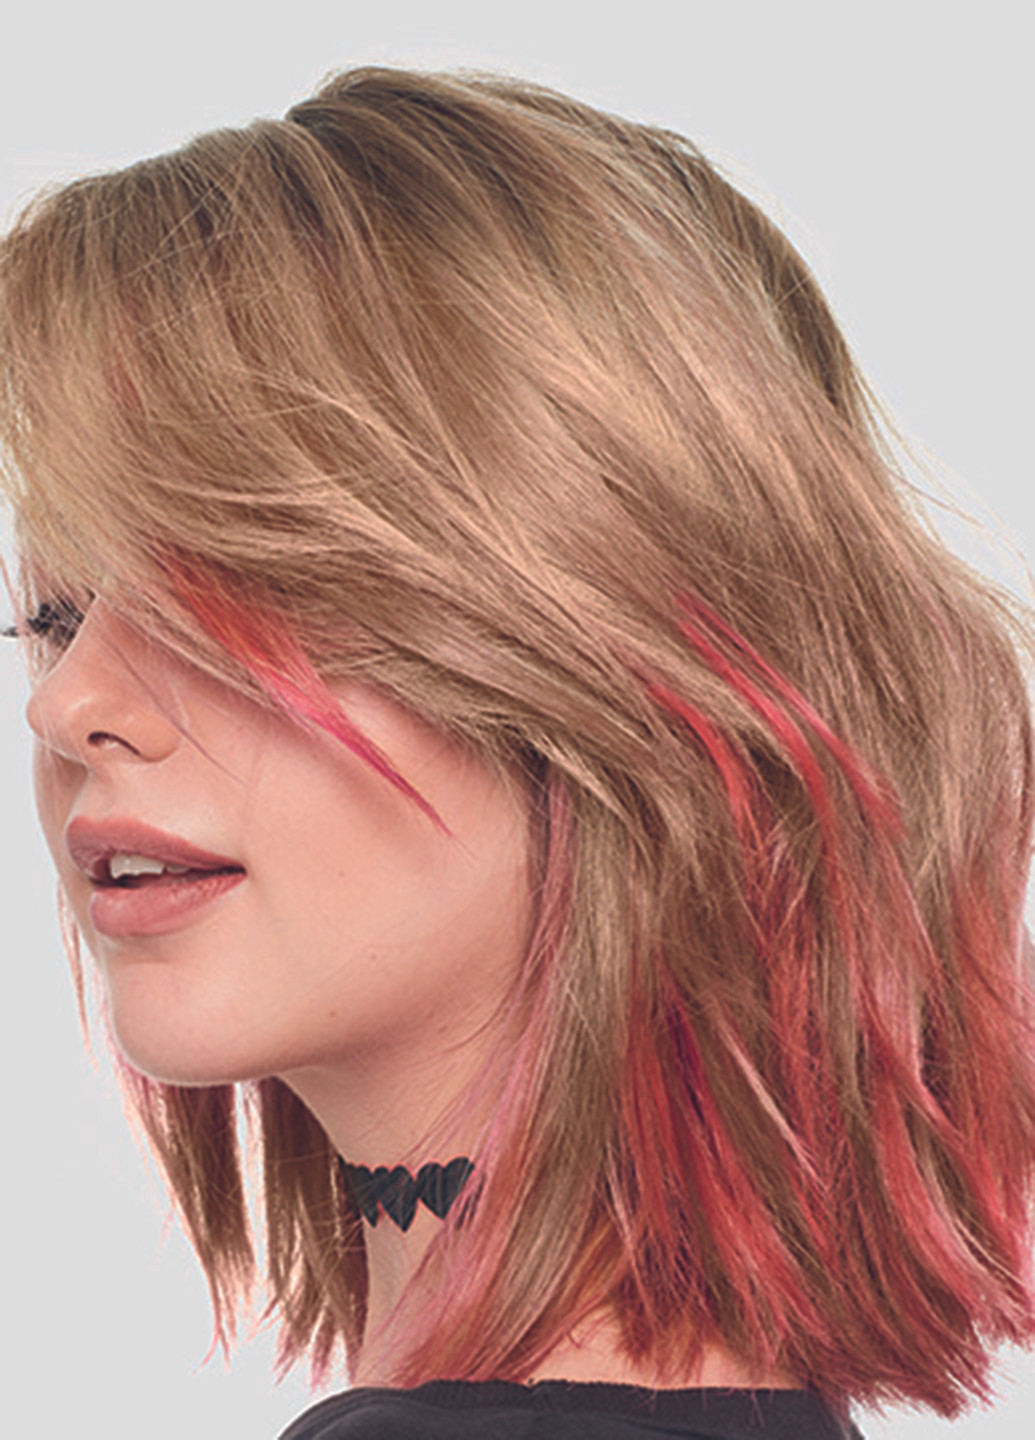 Тонирующий бальзам Colorista HairMakeup оттенок красный, 30 мл L'Oreal Paris (96593947)